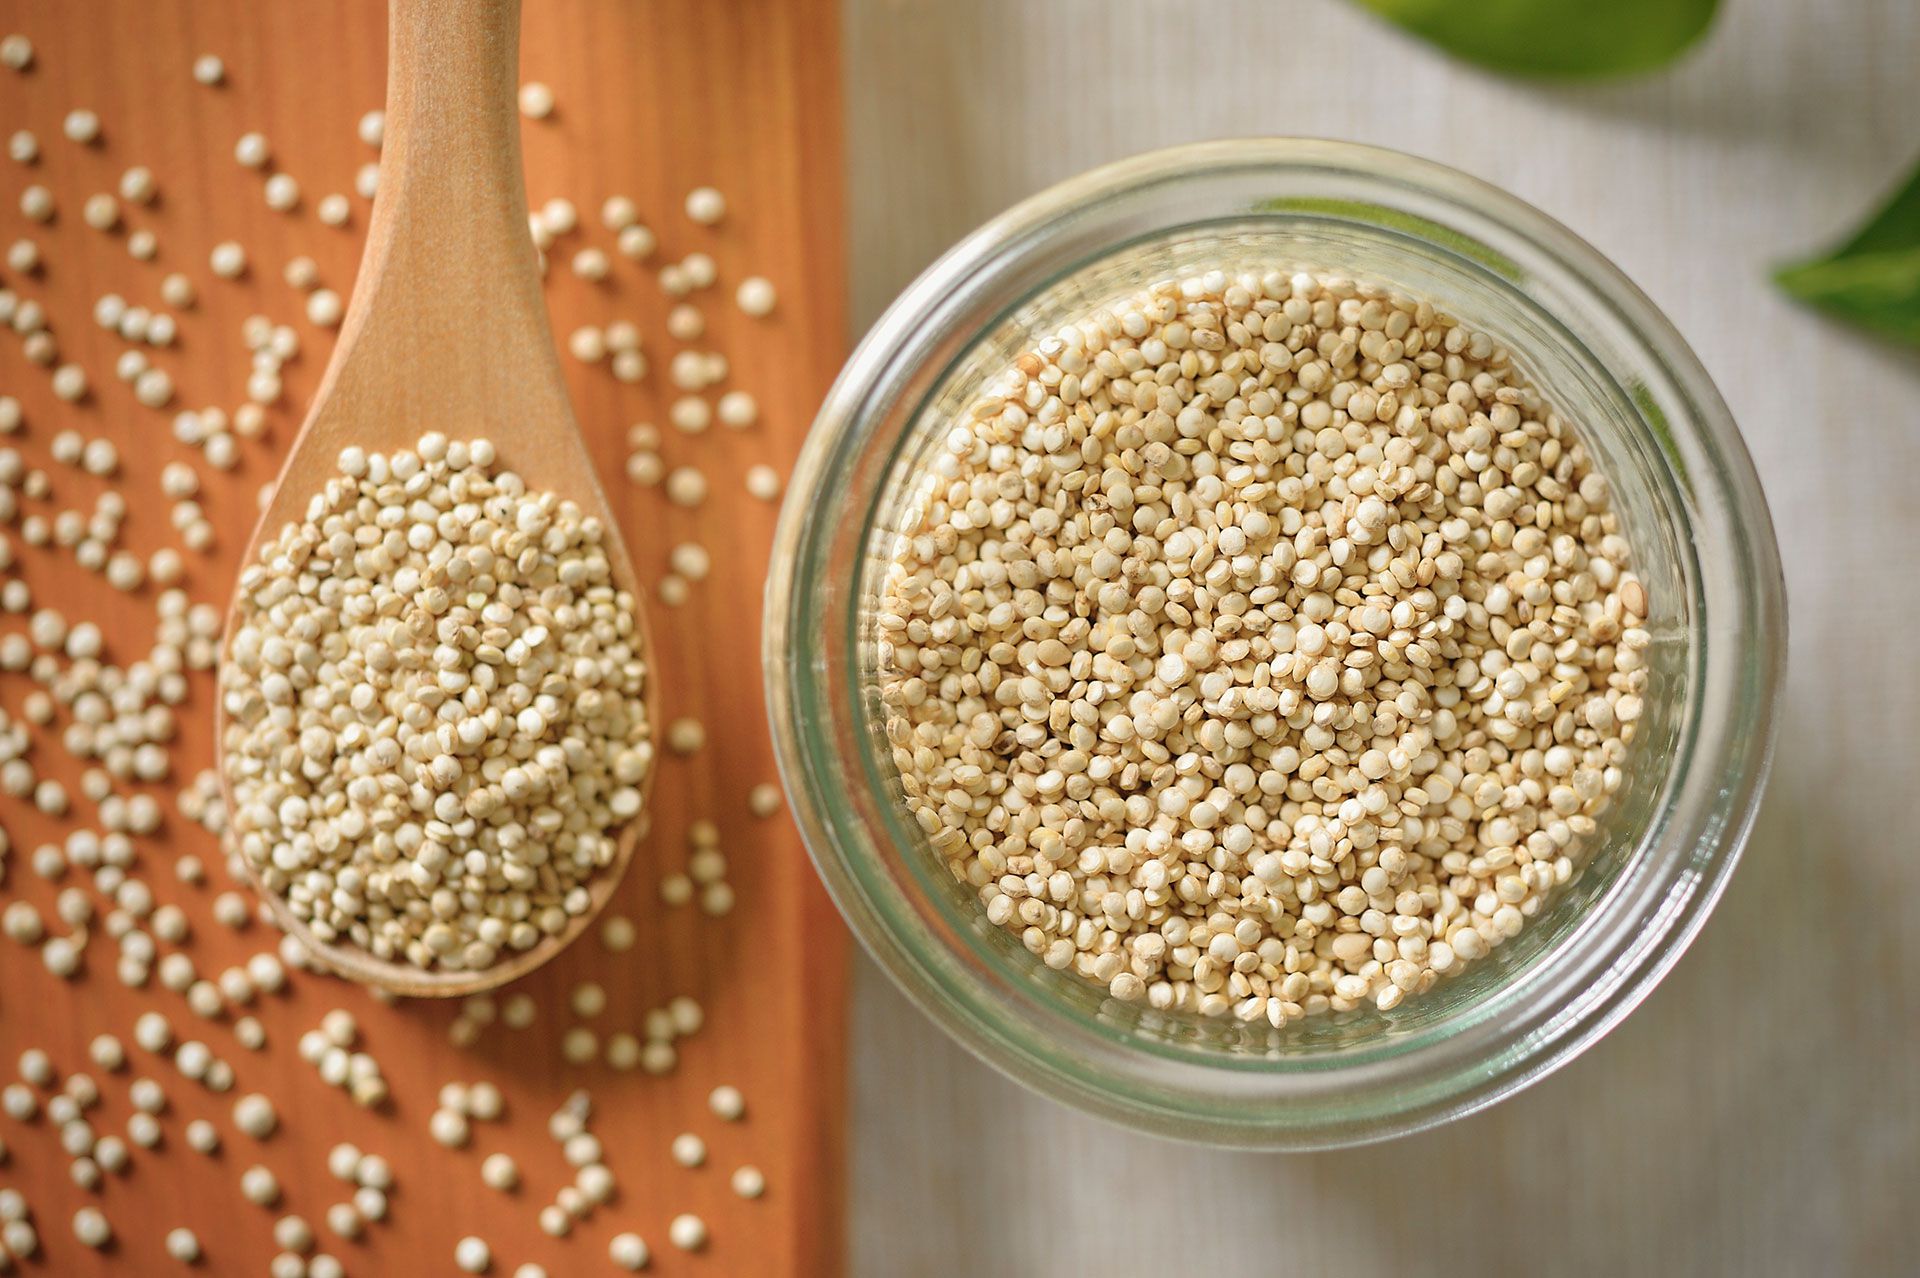 La quinoa es una semilla con altos niveles de contenido nutricional. Usarla en platillos tradicionales puede ayudarte a mejorar tu dieta. (Getty)